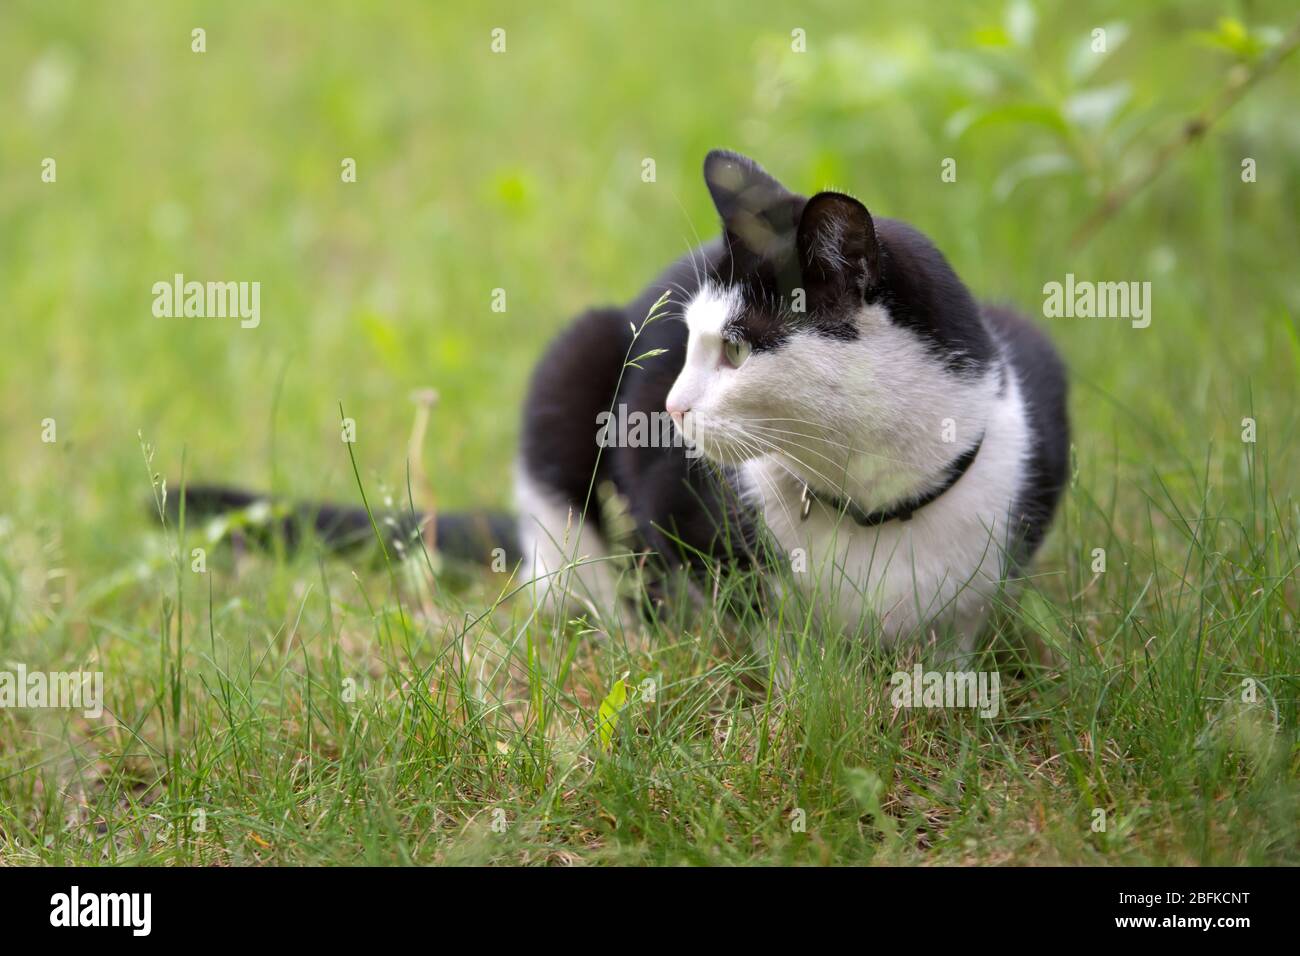 Katze Mit Weißem Kragen Stockfotos und -bilder Kaufen - Alamy